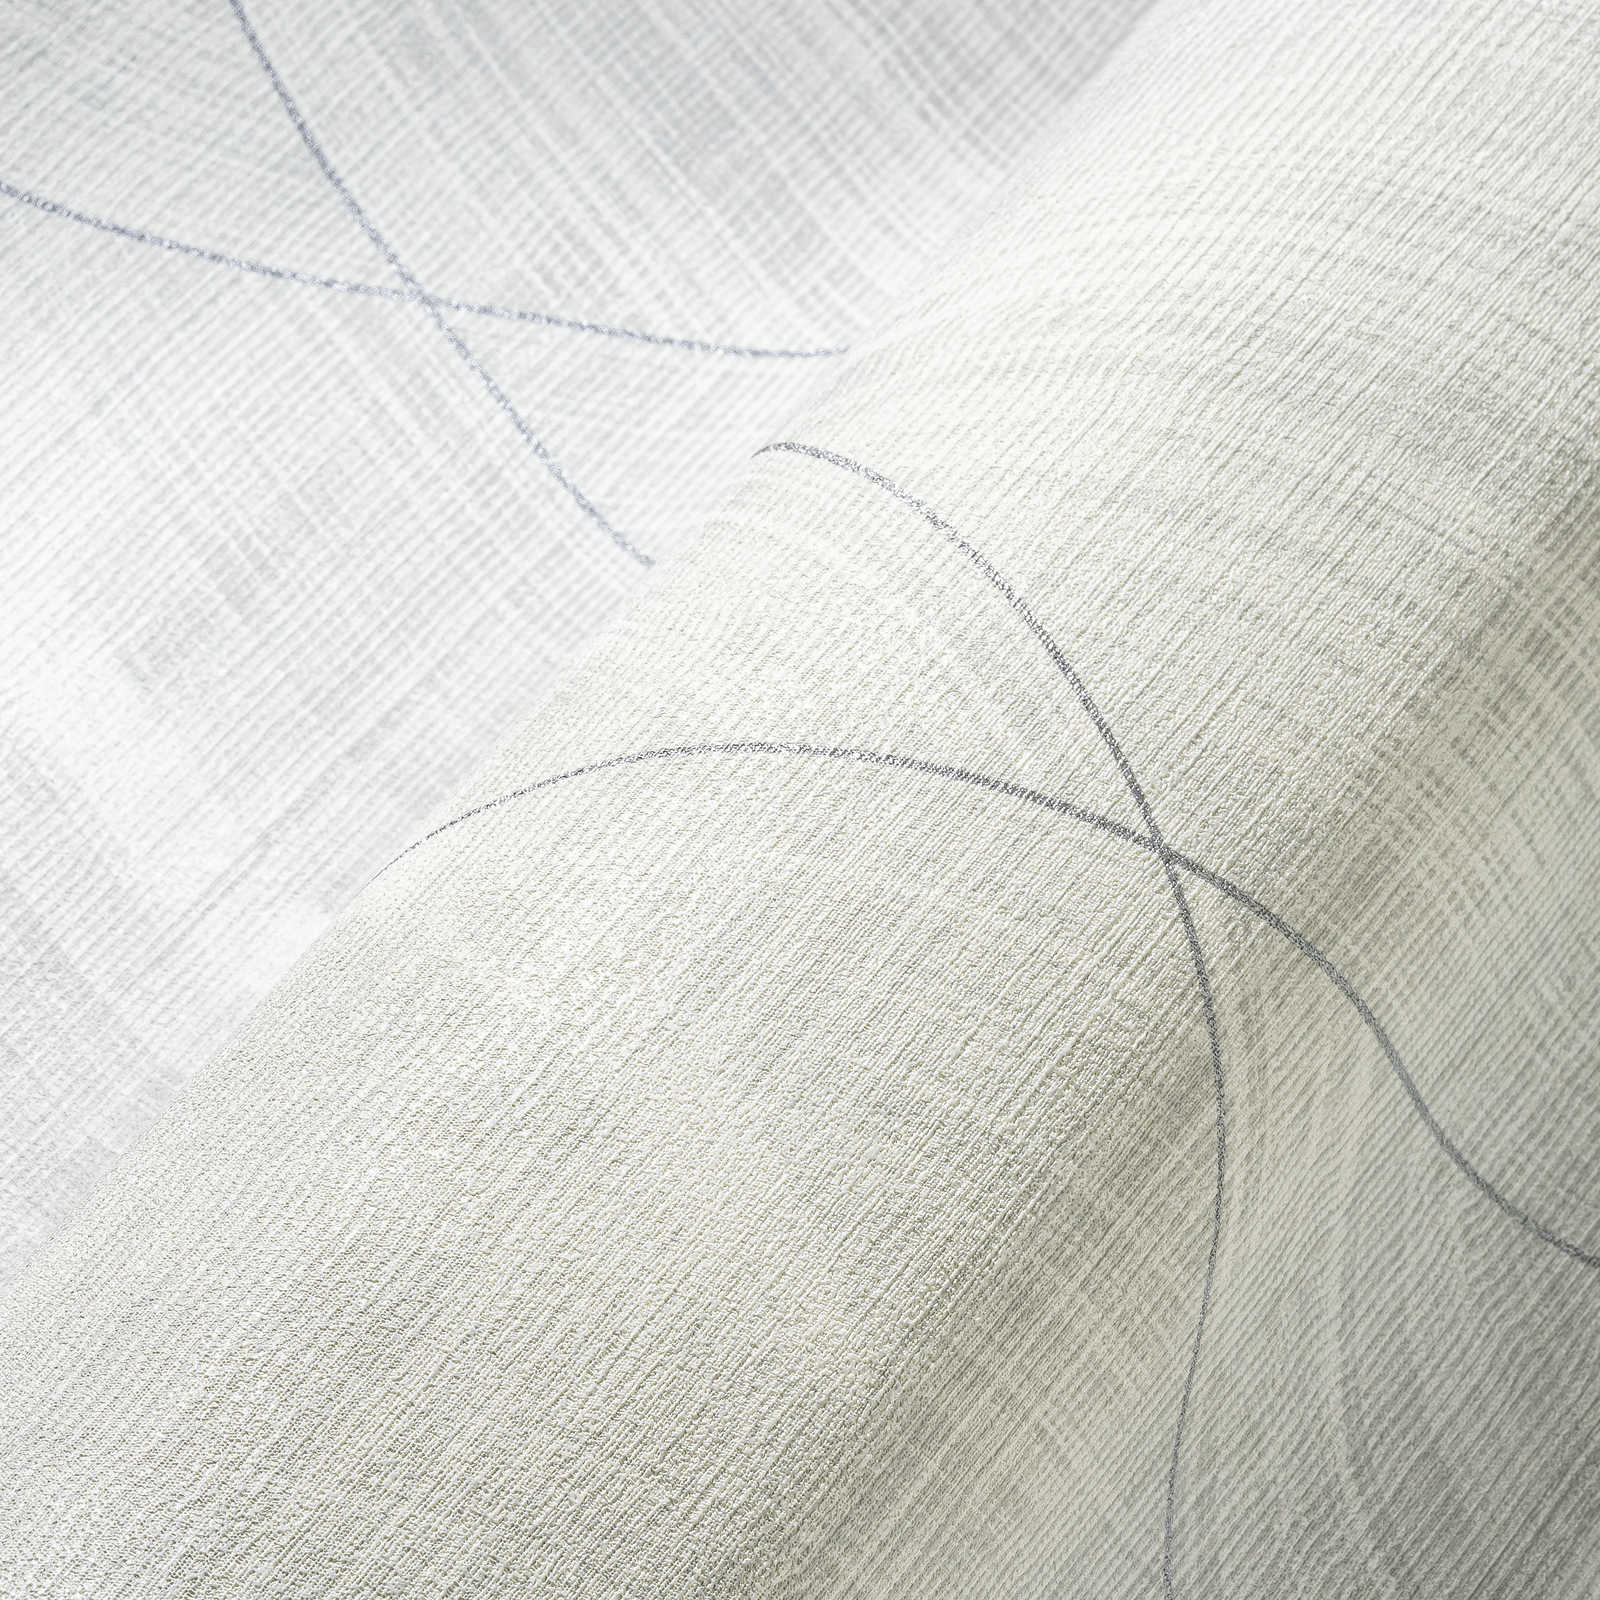             Papel pintado de aspecto textil con motivo de rombos - metálico, blanco
        